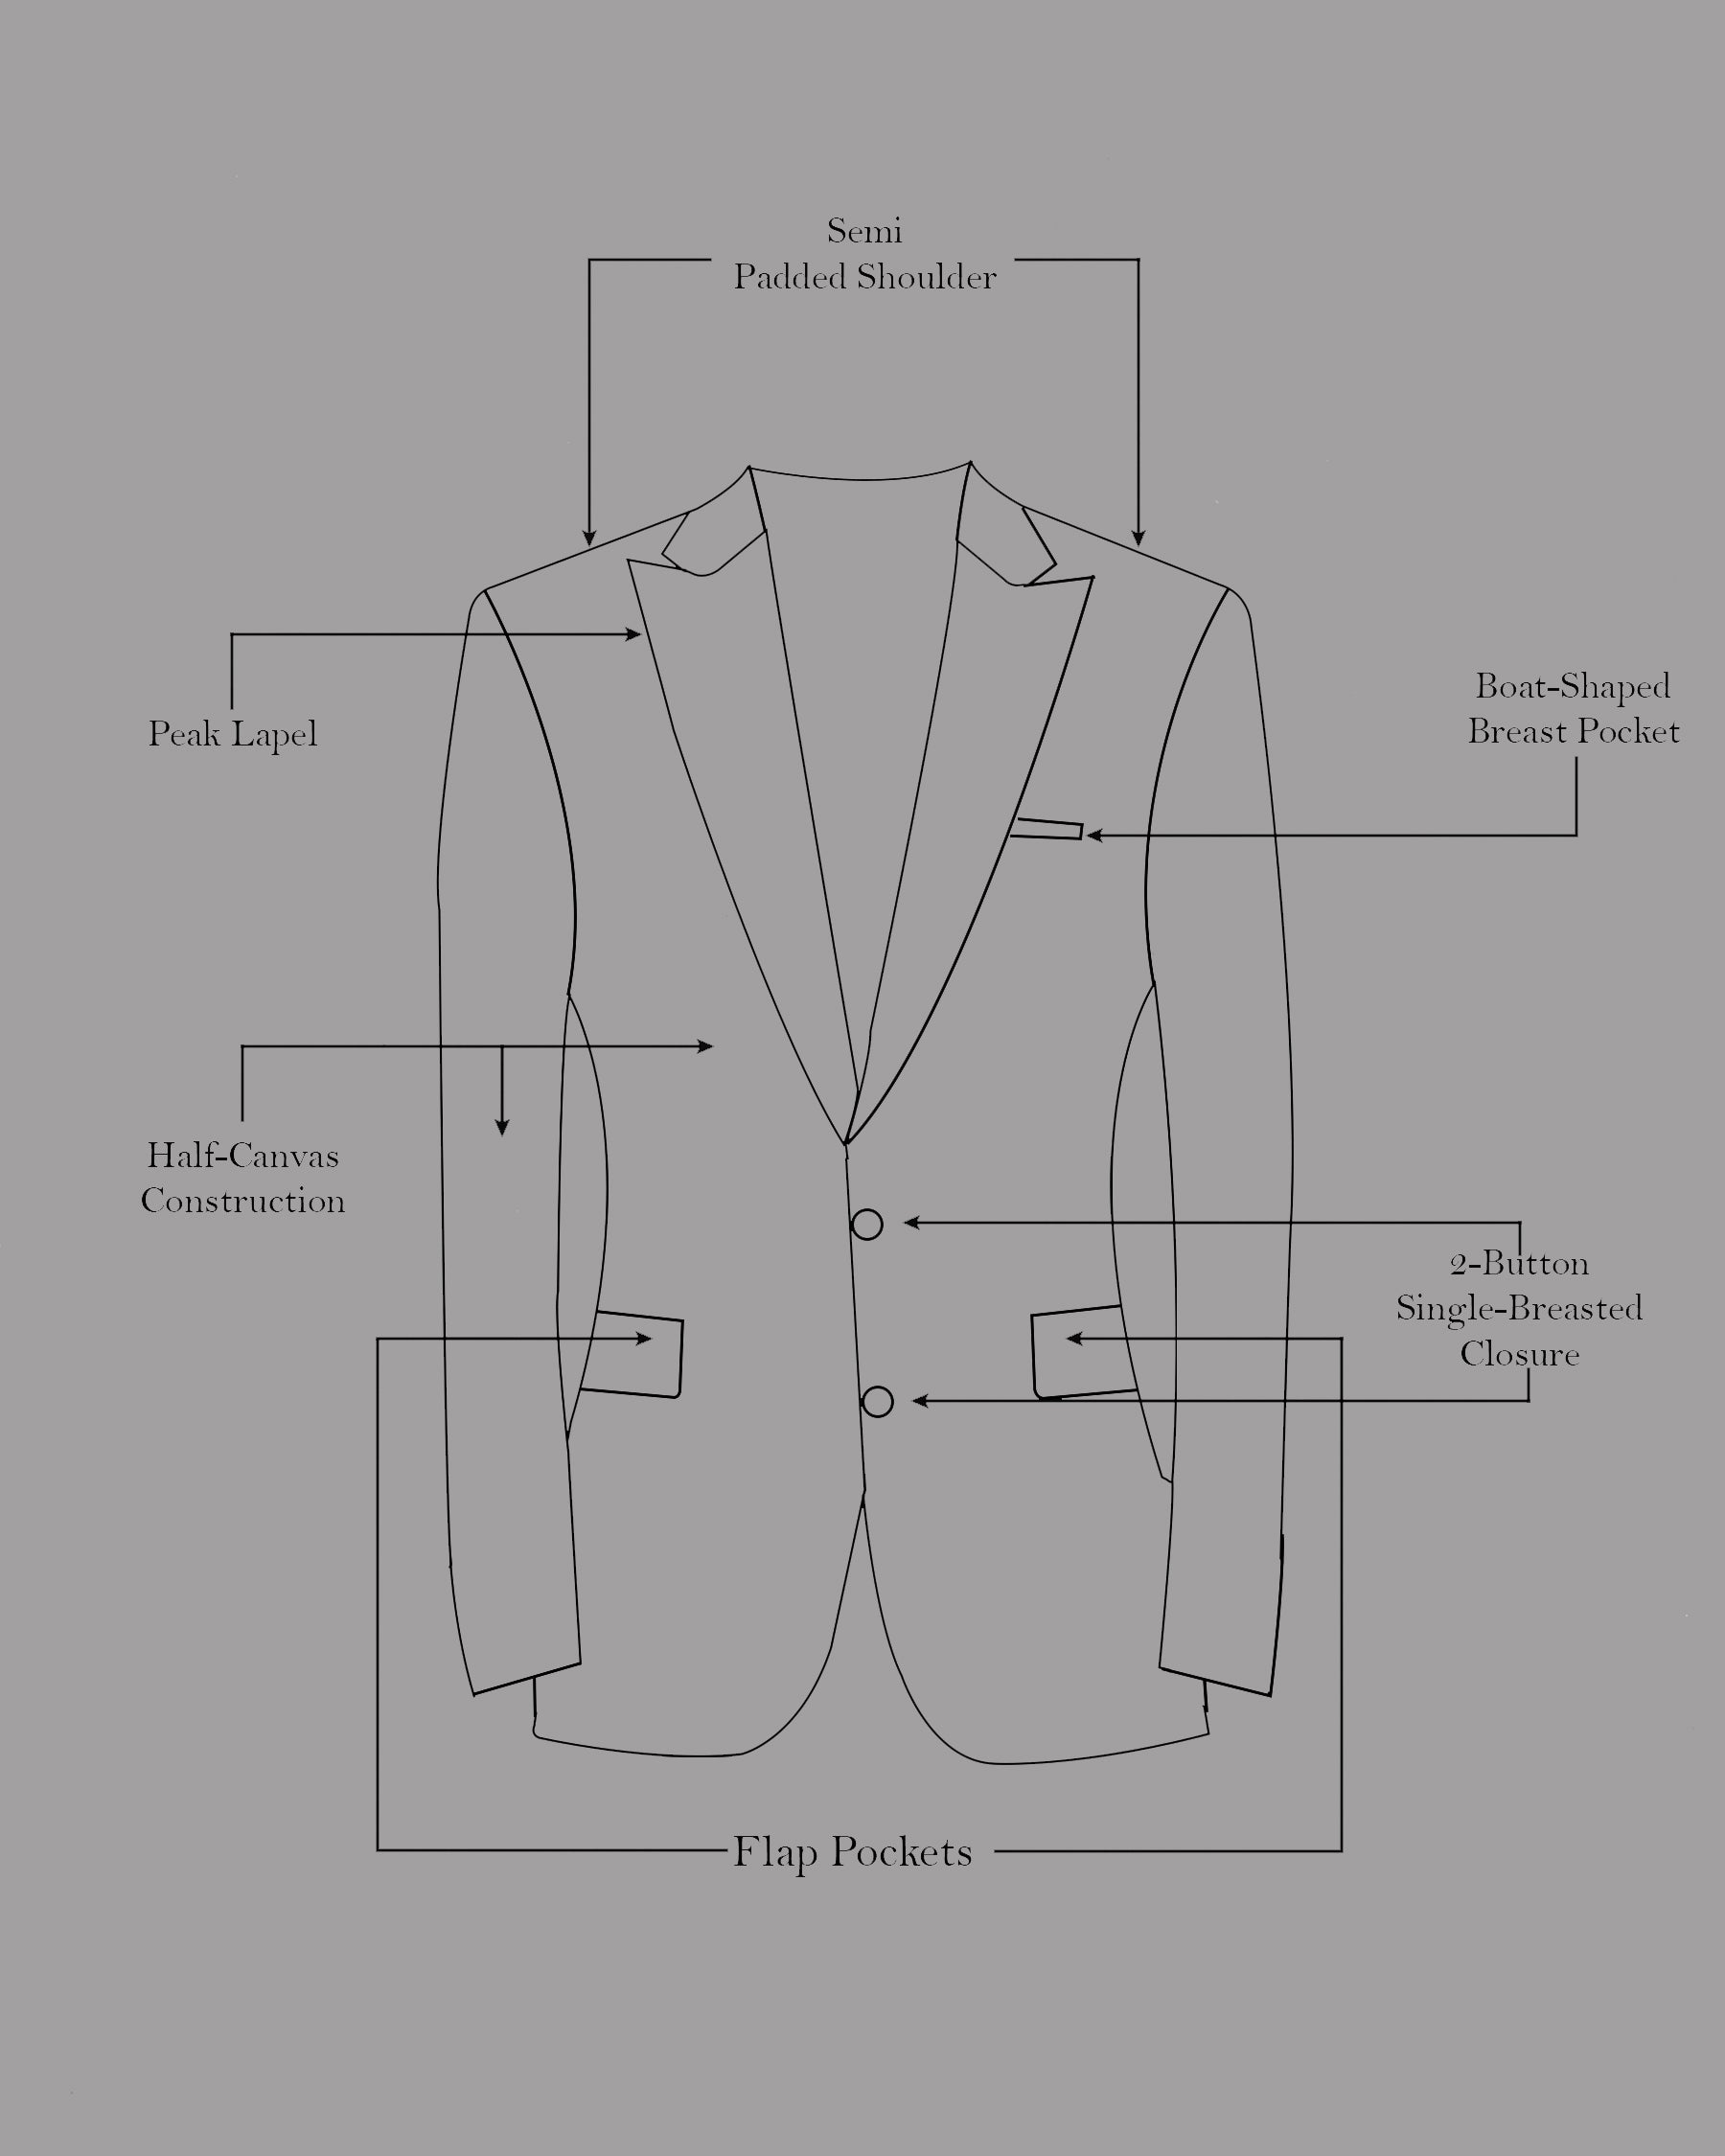 Brown Premium Cotton Suit